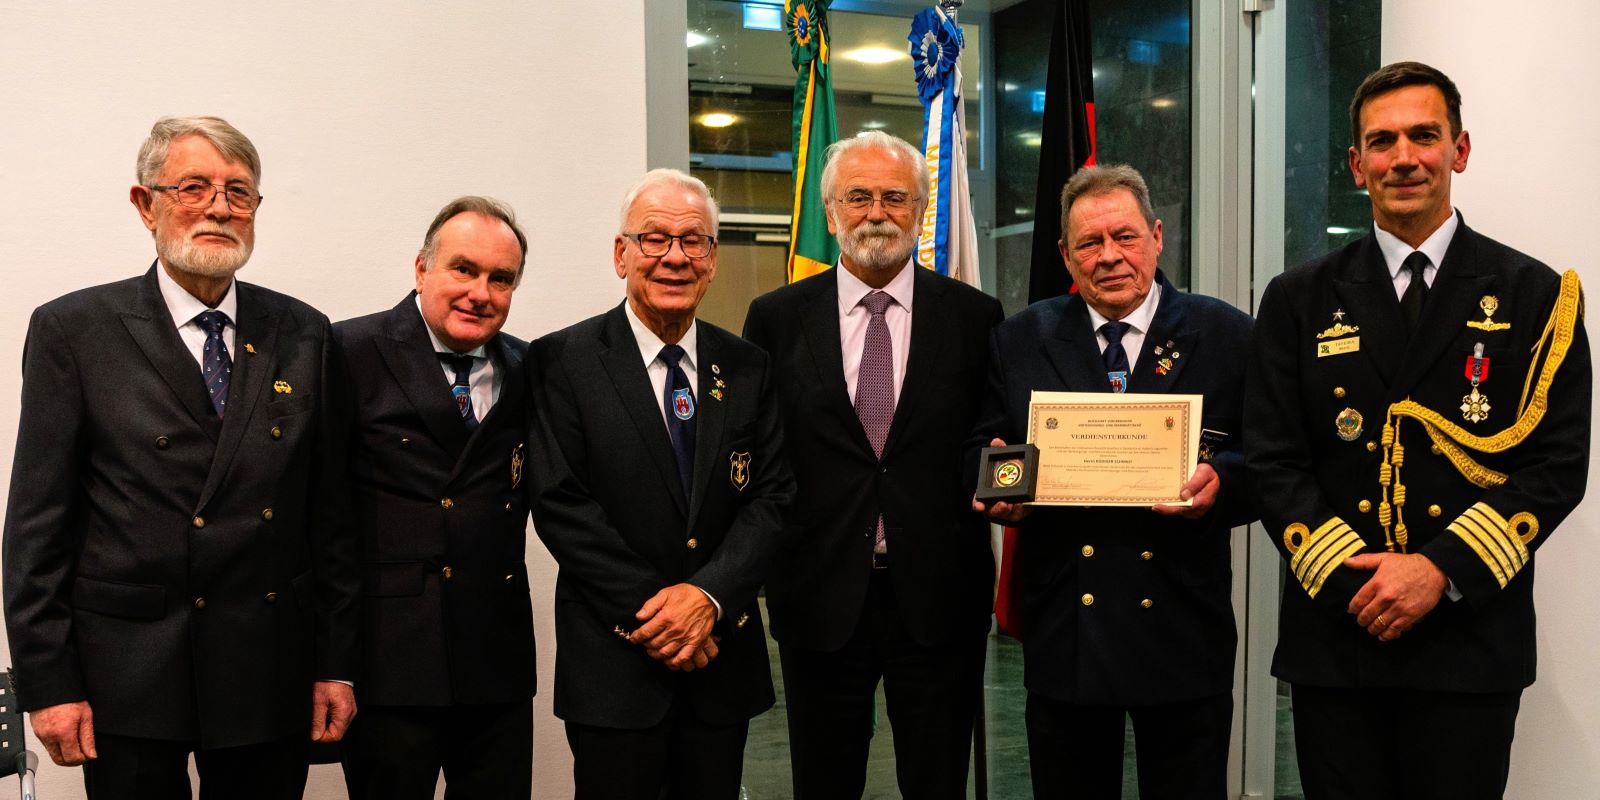 Auszeichnung in der Botschaft Brasiliens: Urkunde und Medaille für die Marinekameradschaft Harburg. Foto: privat